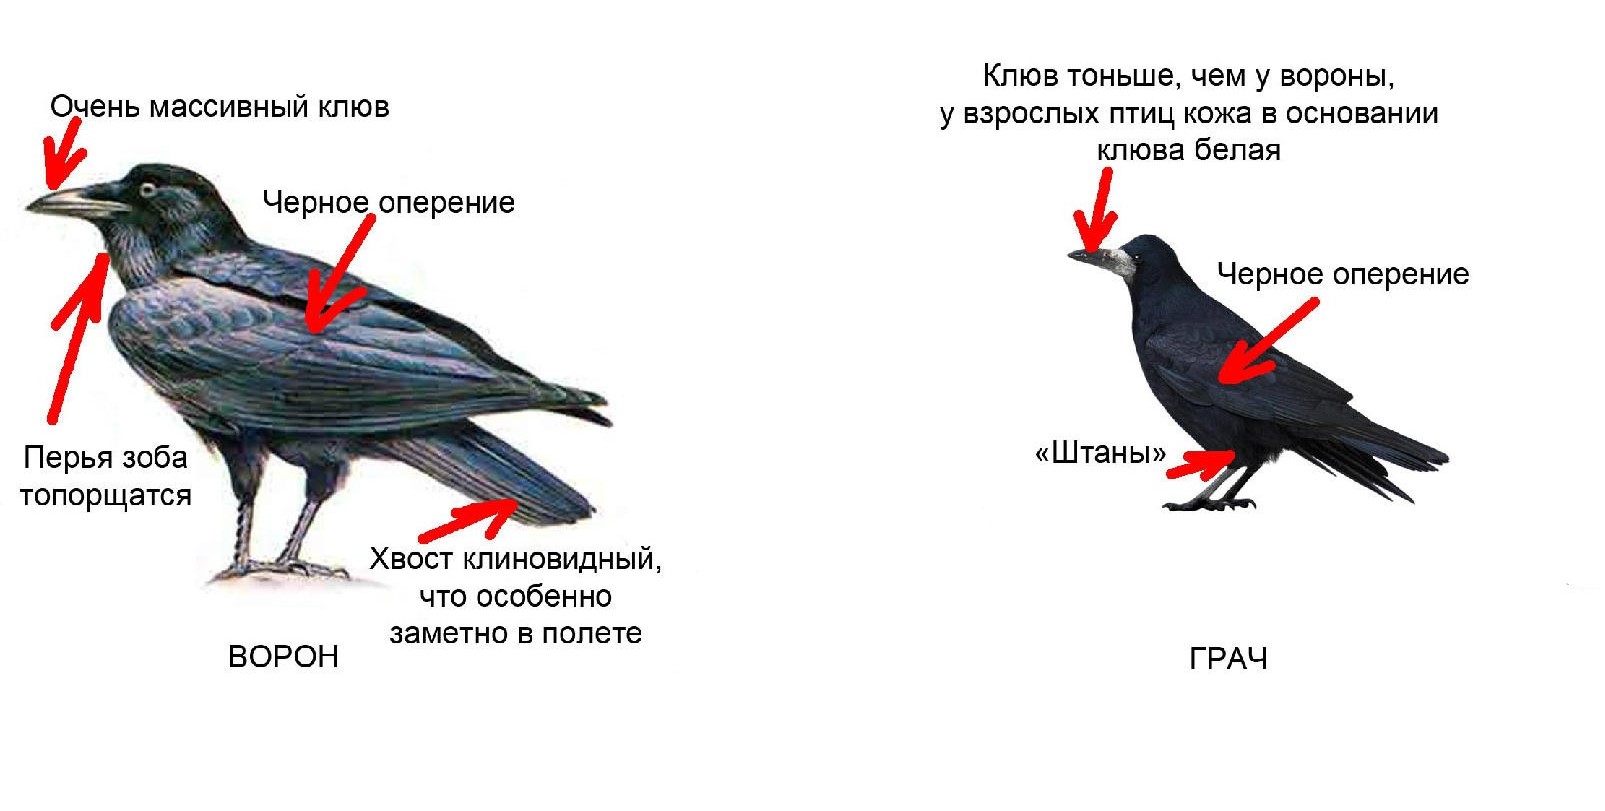 Грач птица: описание, отличие от вороны, чем питается, сколько живет